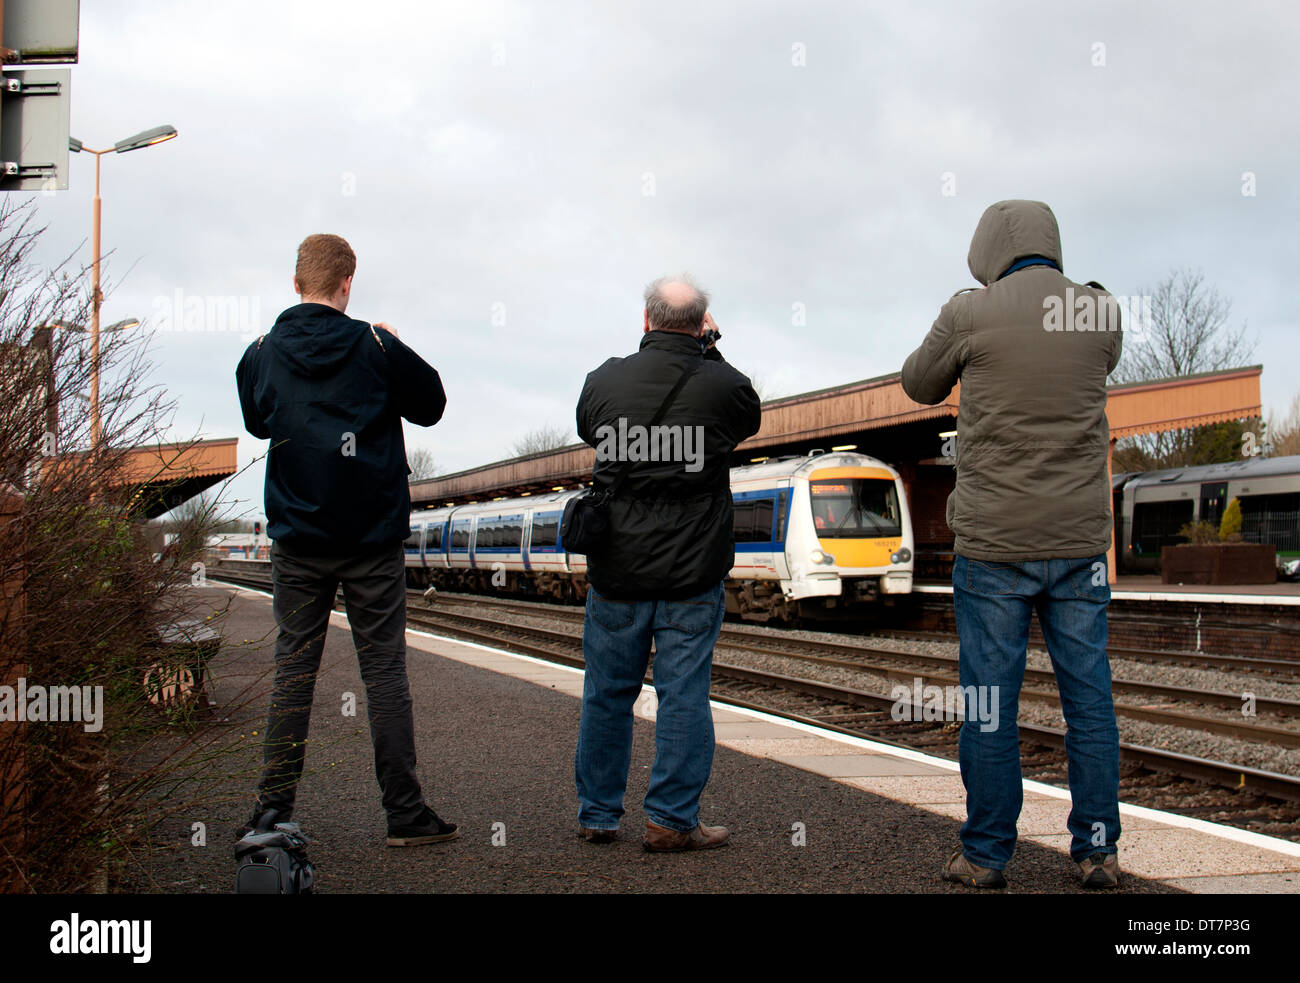 Amateurs de chemin de fer photographier un Chiltern Railways train diesel, Leamington Spa, Royaume-Uni Banque D'Images